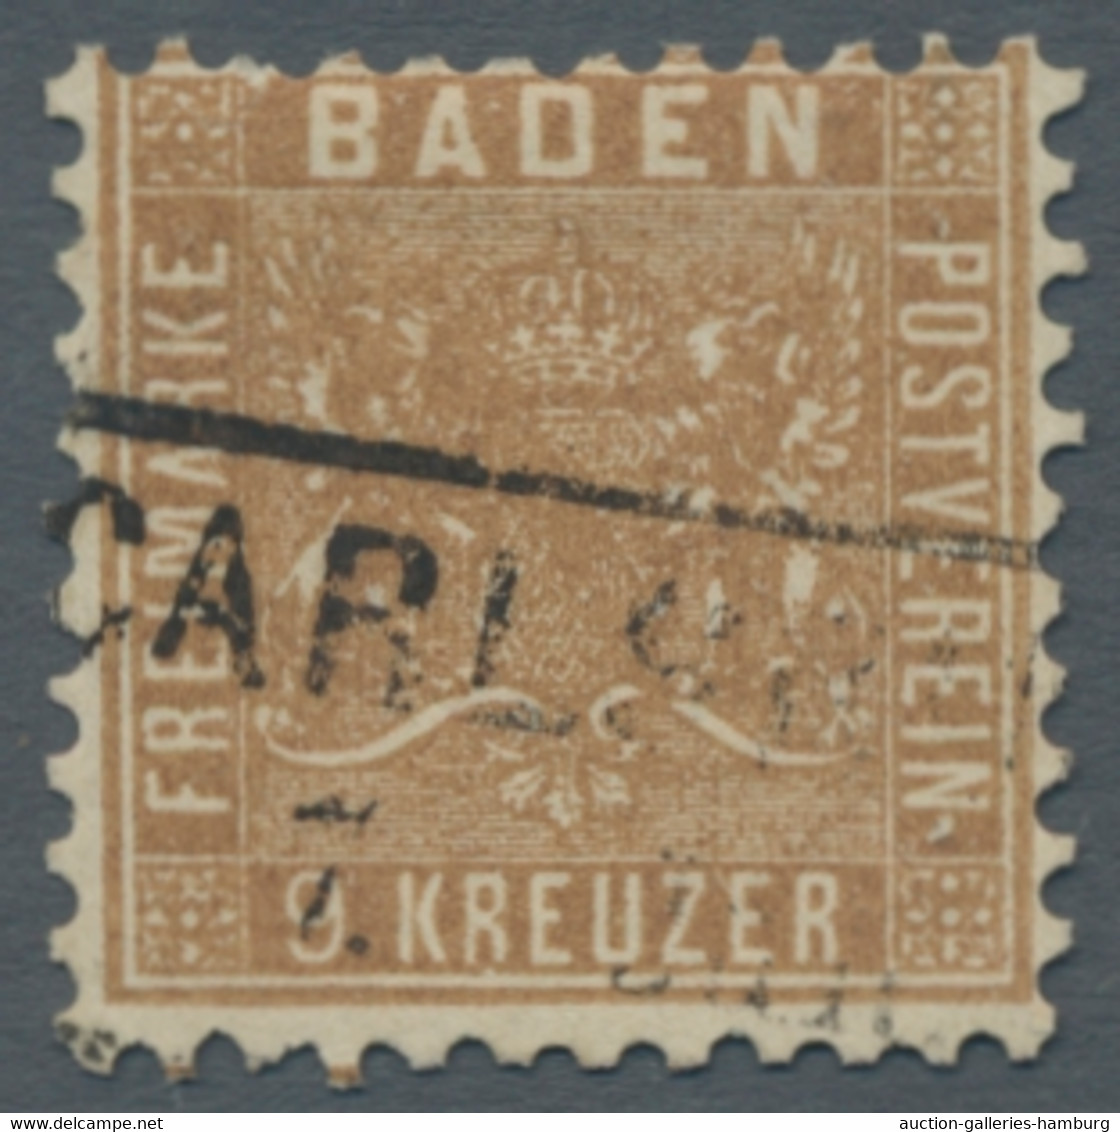 Altdeutschland: 1850-1911, 40 ehemalige Lose eines norddeutschen Auktionshauses der Gebiete Baden, B